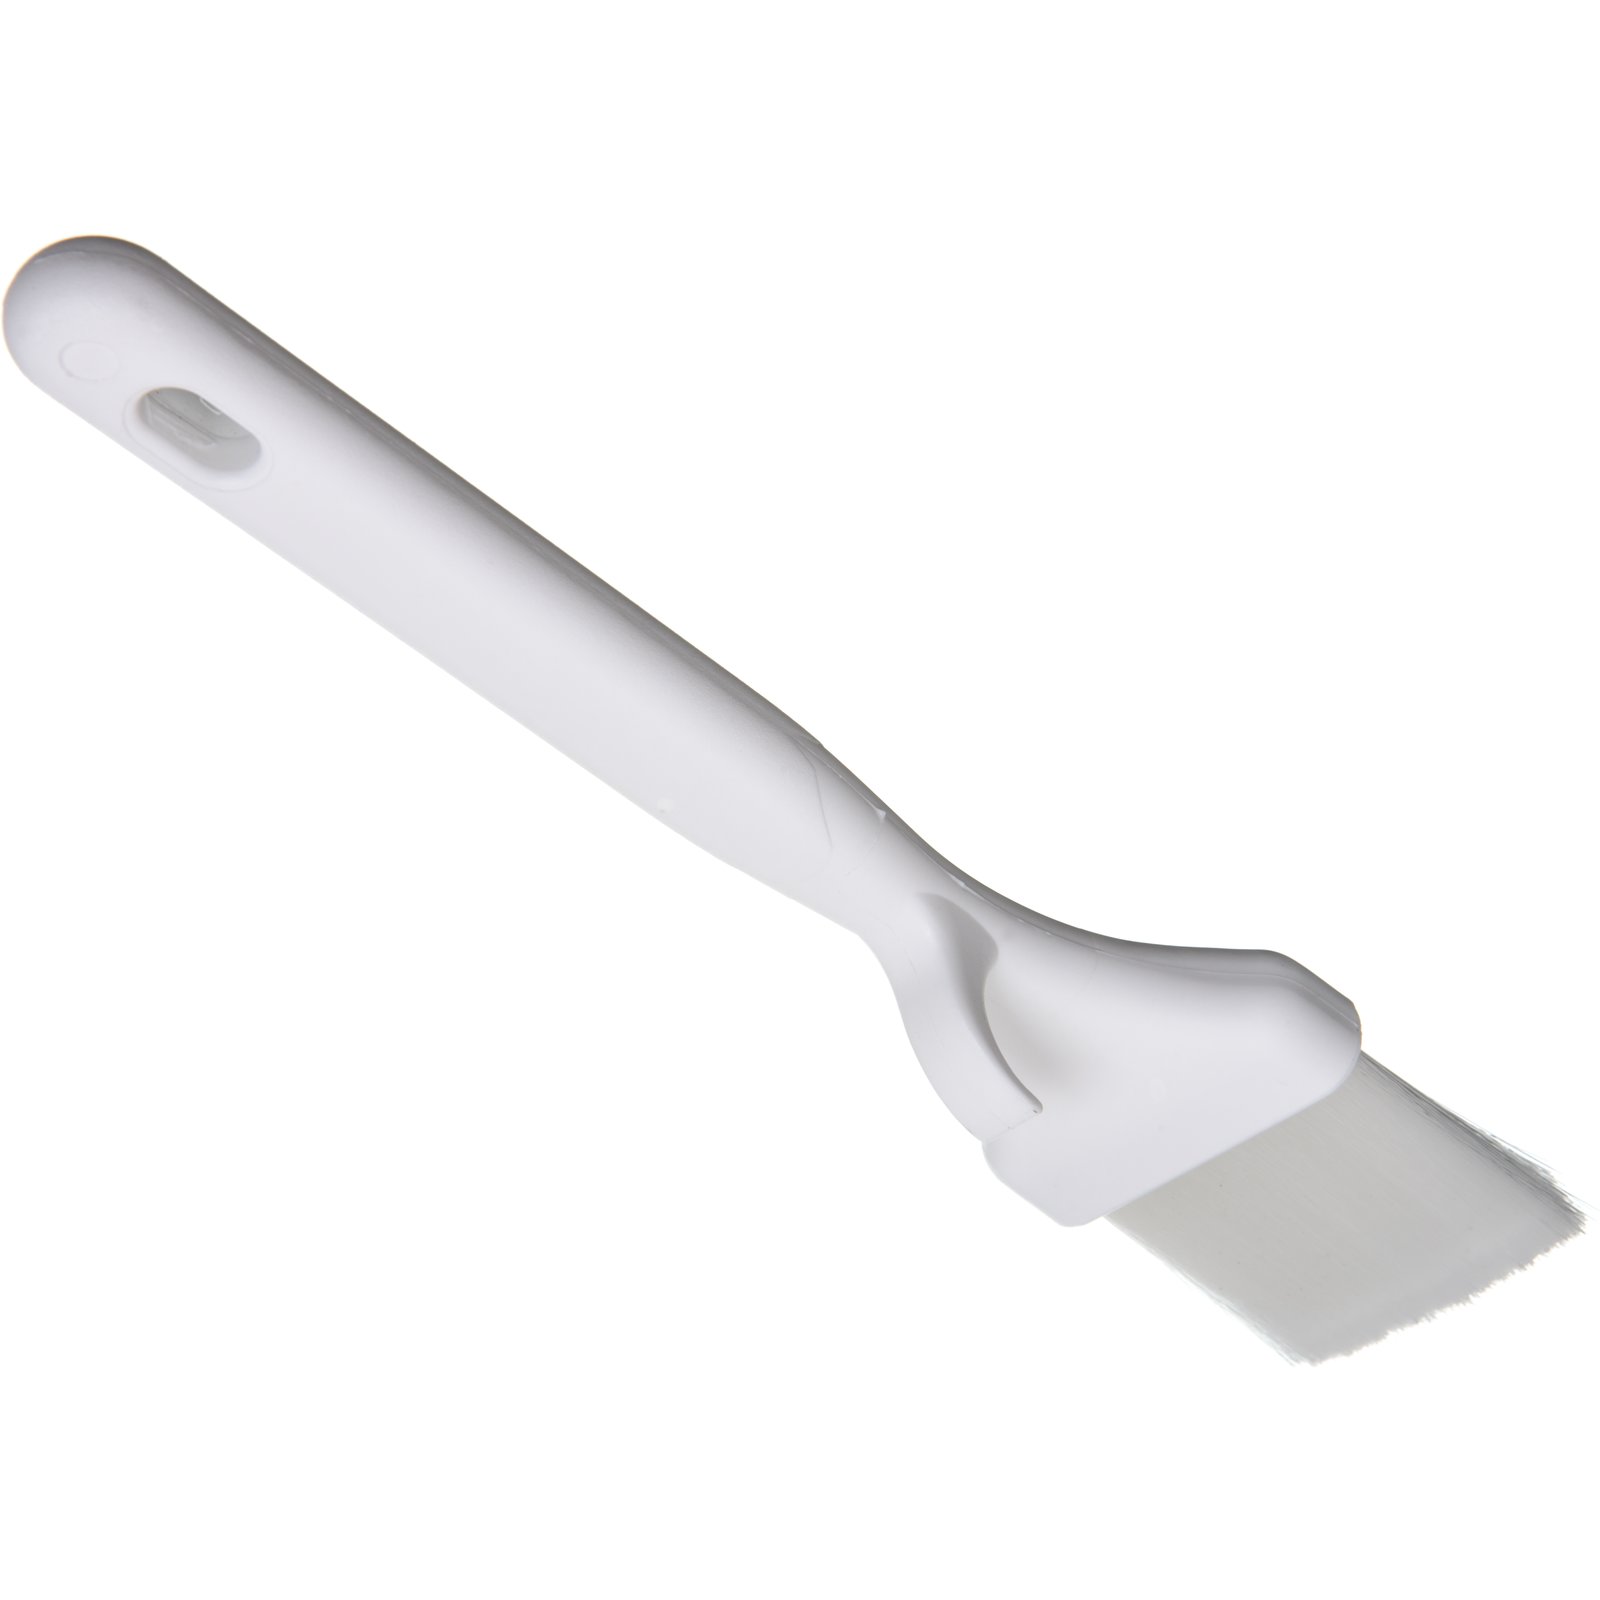 Hometeq 2 Pack - Nylon Bristle Pastry Brush for Basting, Baking, Cooking  Food Brush